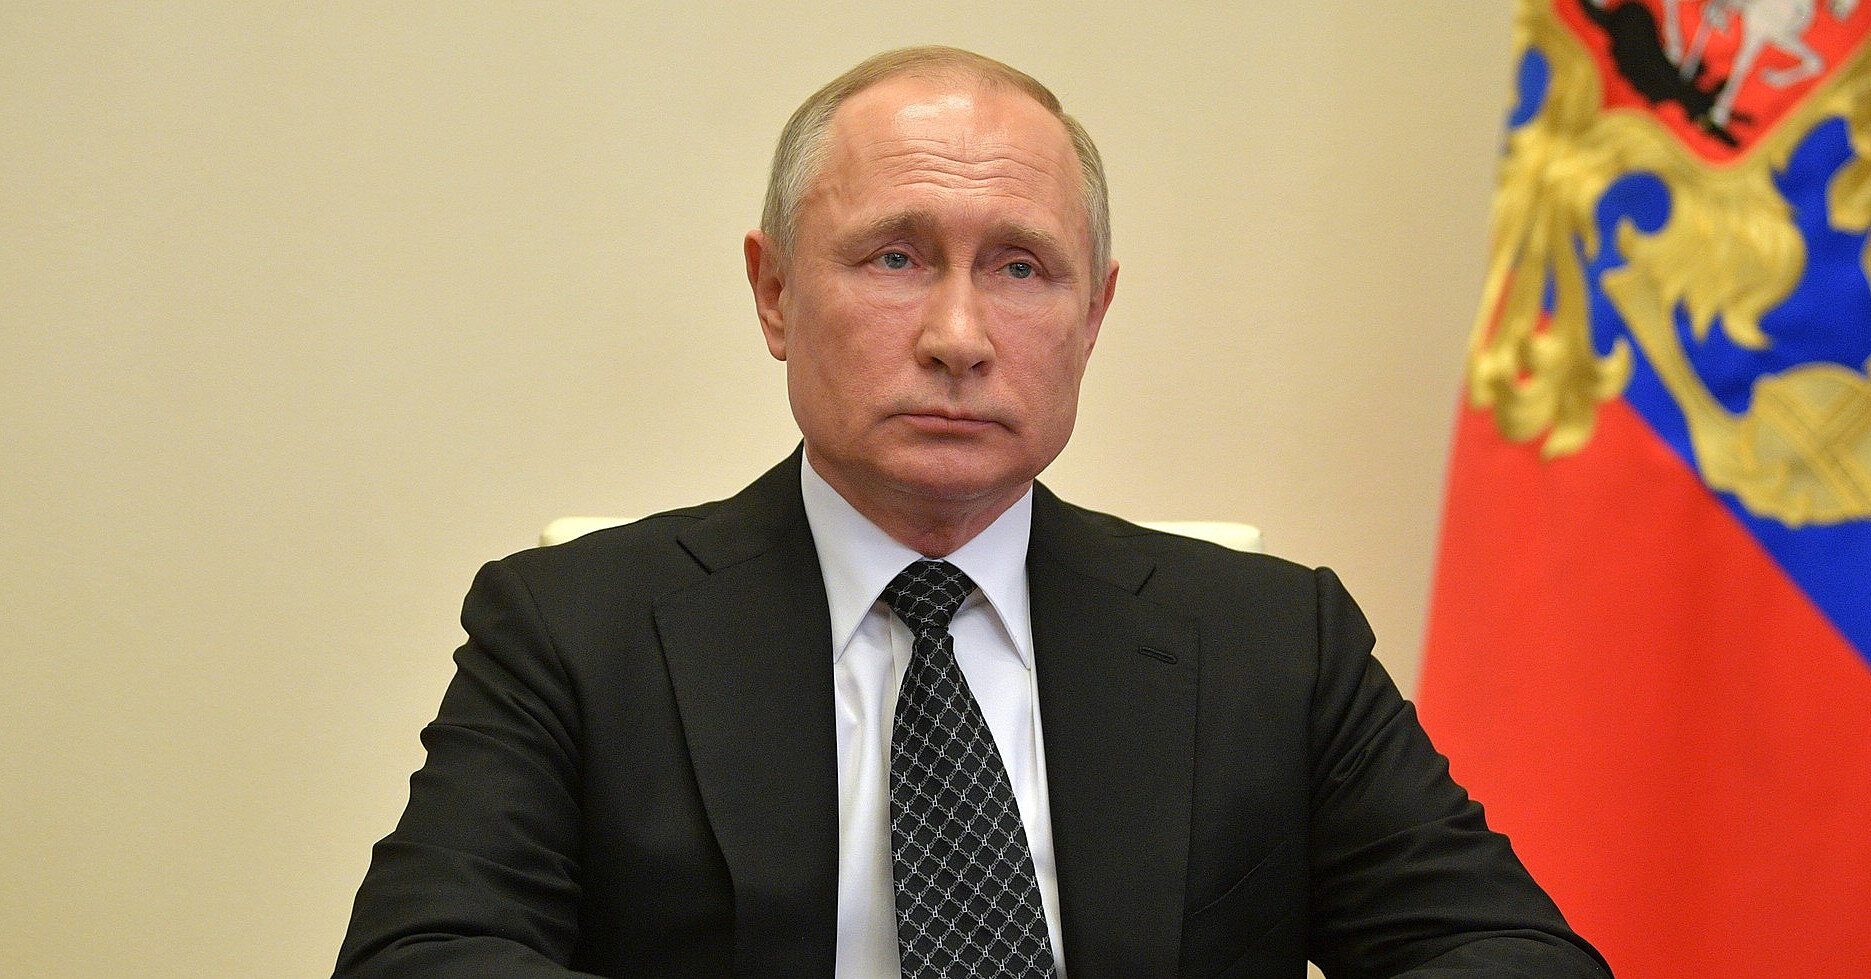 ЗМІ повідомили, які країни ЄС направлять представників на інавгурацію Путіна